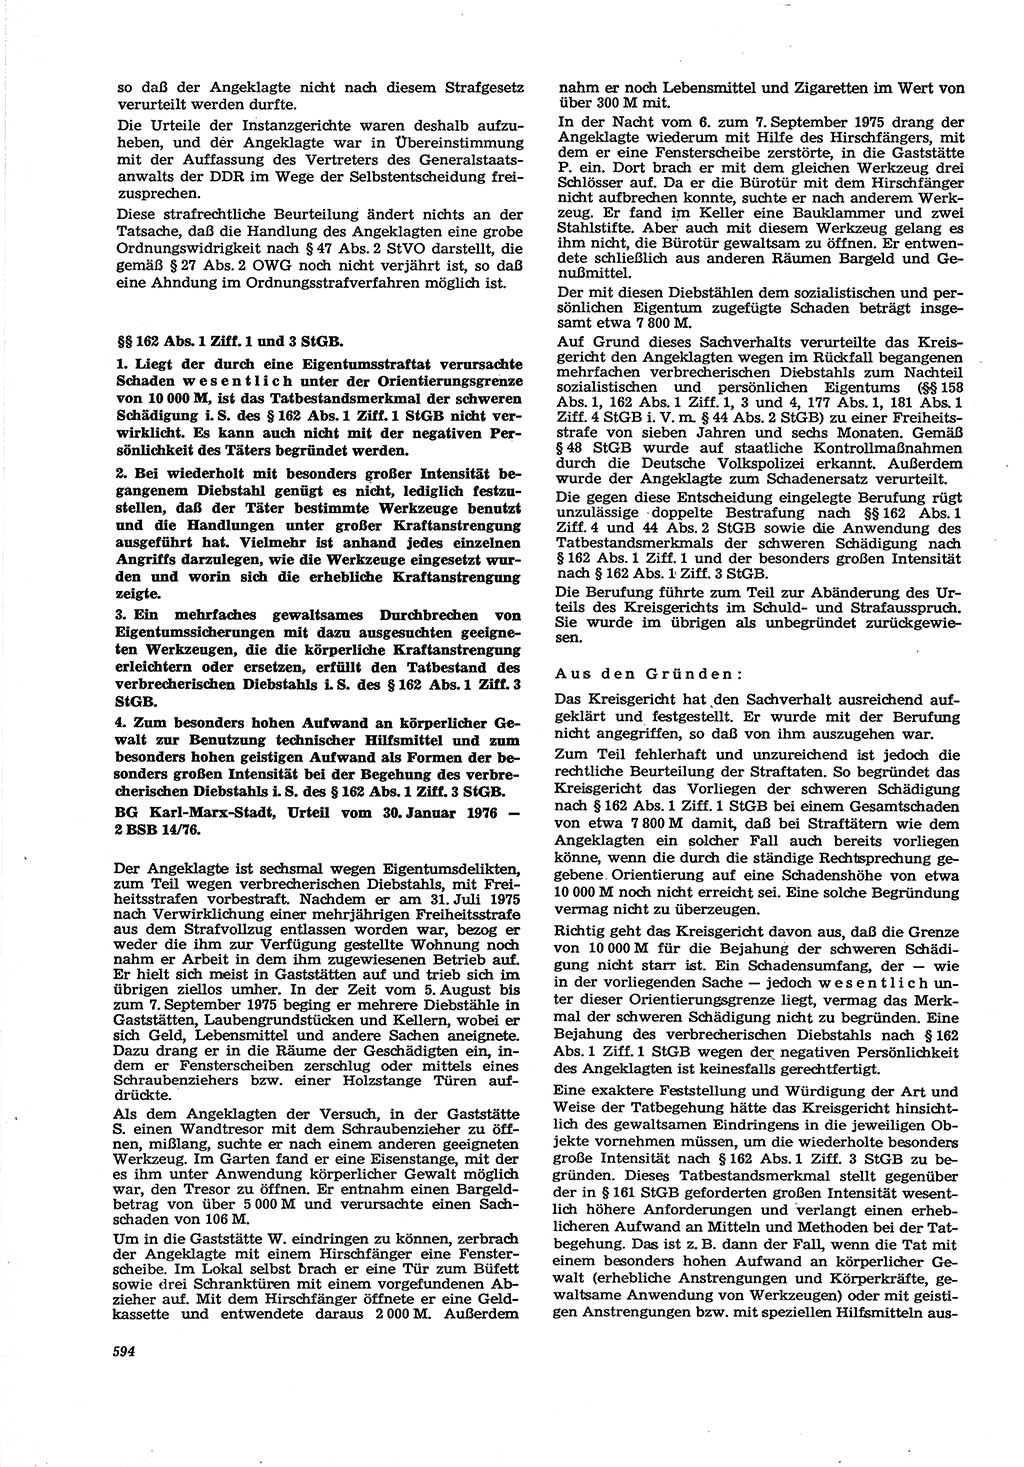 Neue Justiz (NJ), Zeitschrift für Recht und Rechtswissenschaft [Deutsche Demokratische Republik (DDR)], 30. Jahrgang 1976, Seite 594 (NJ DDR 1976, S. 594)